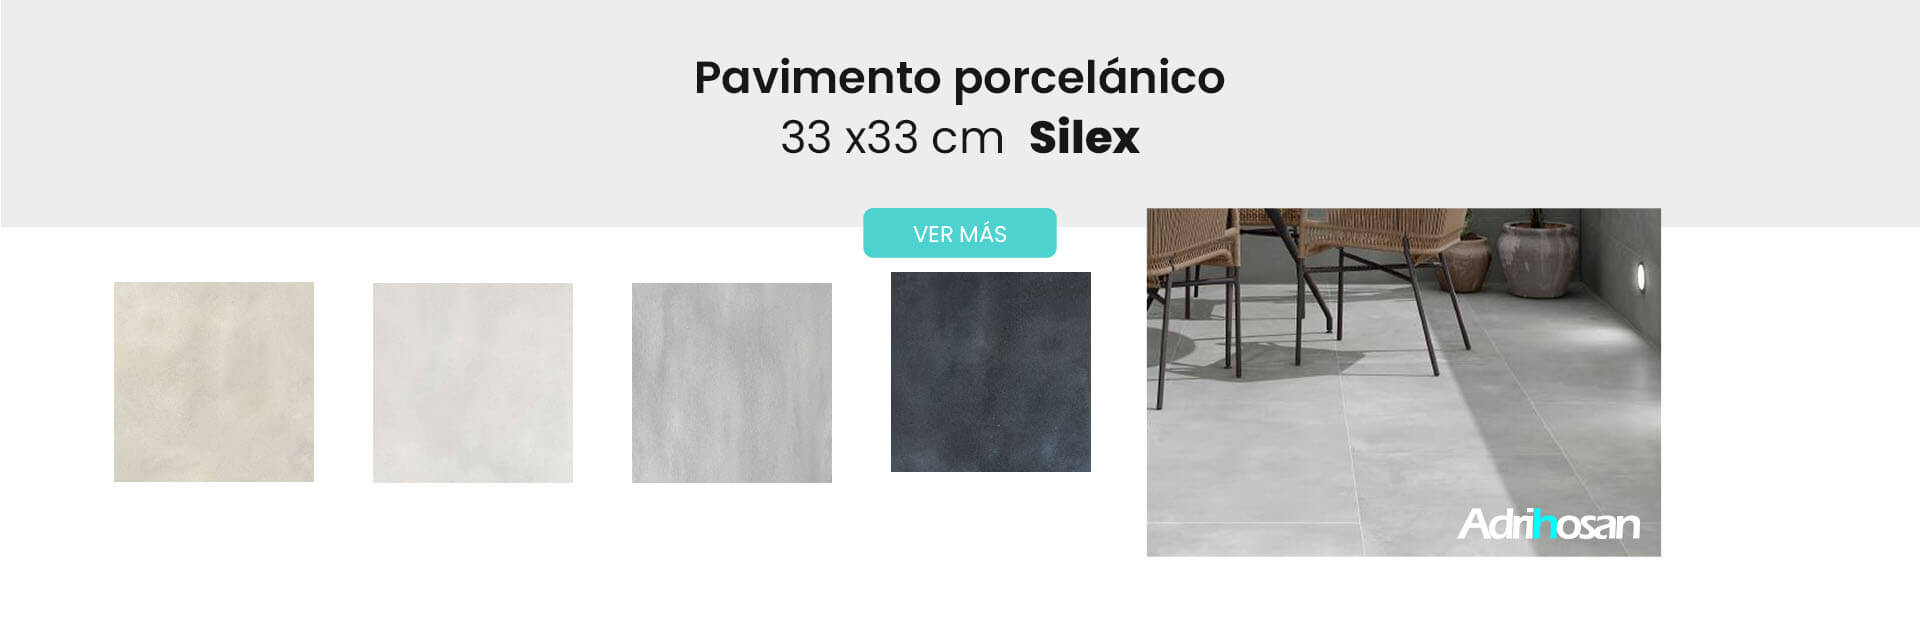 Pavimento porcelánico exterior Silex 33x33 cm